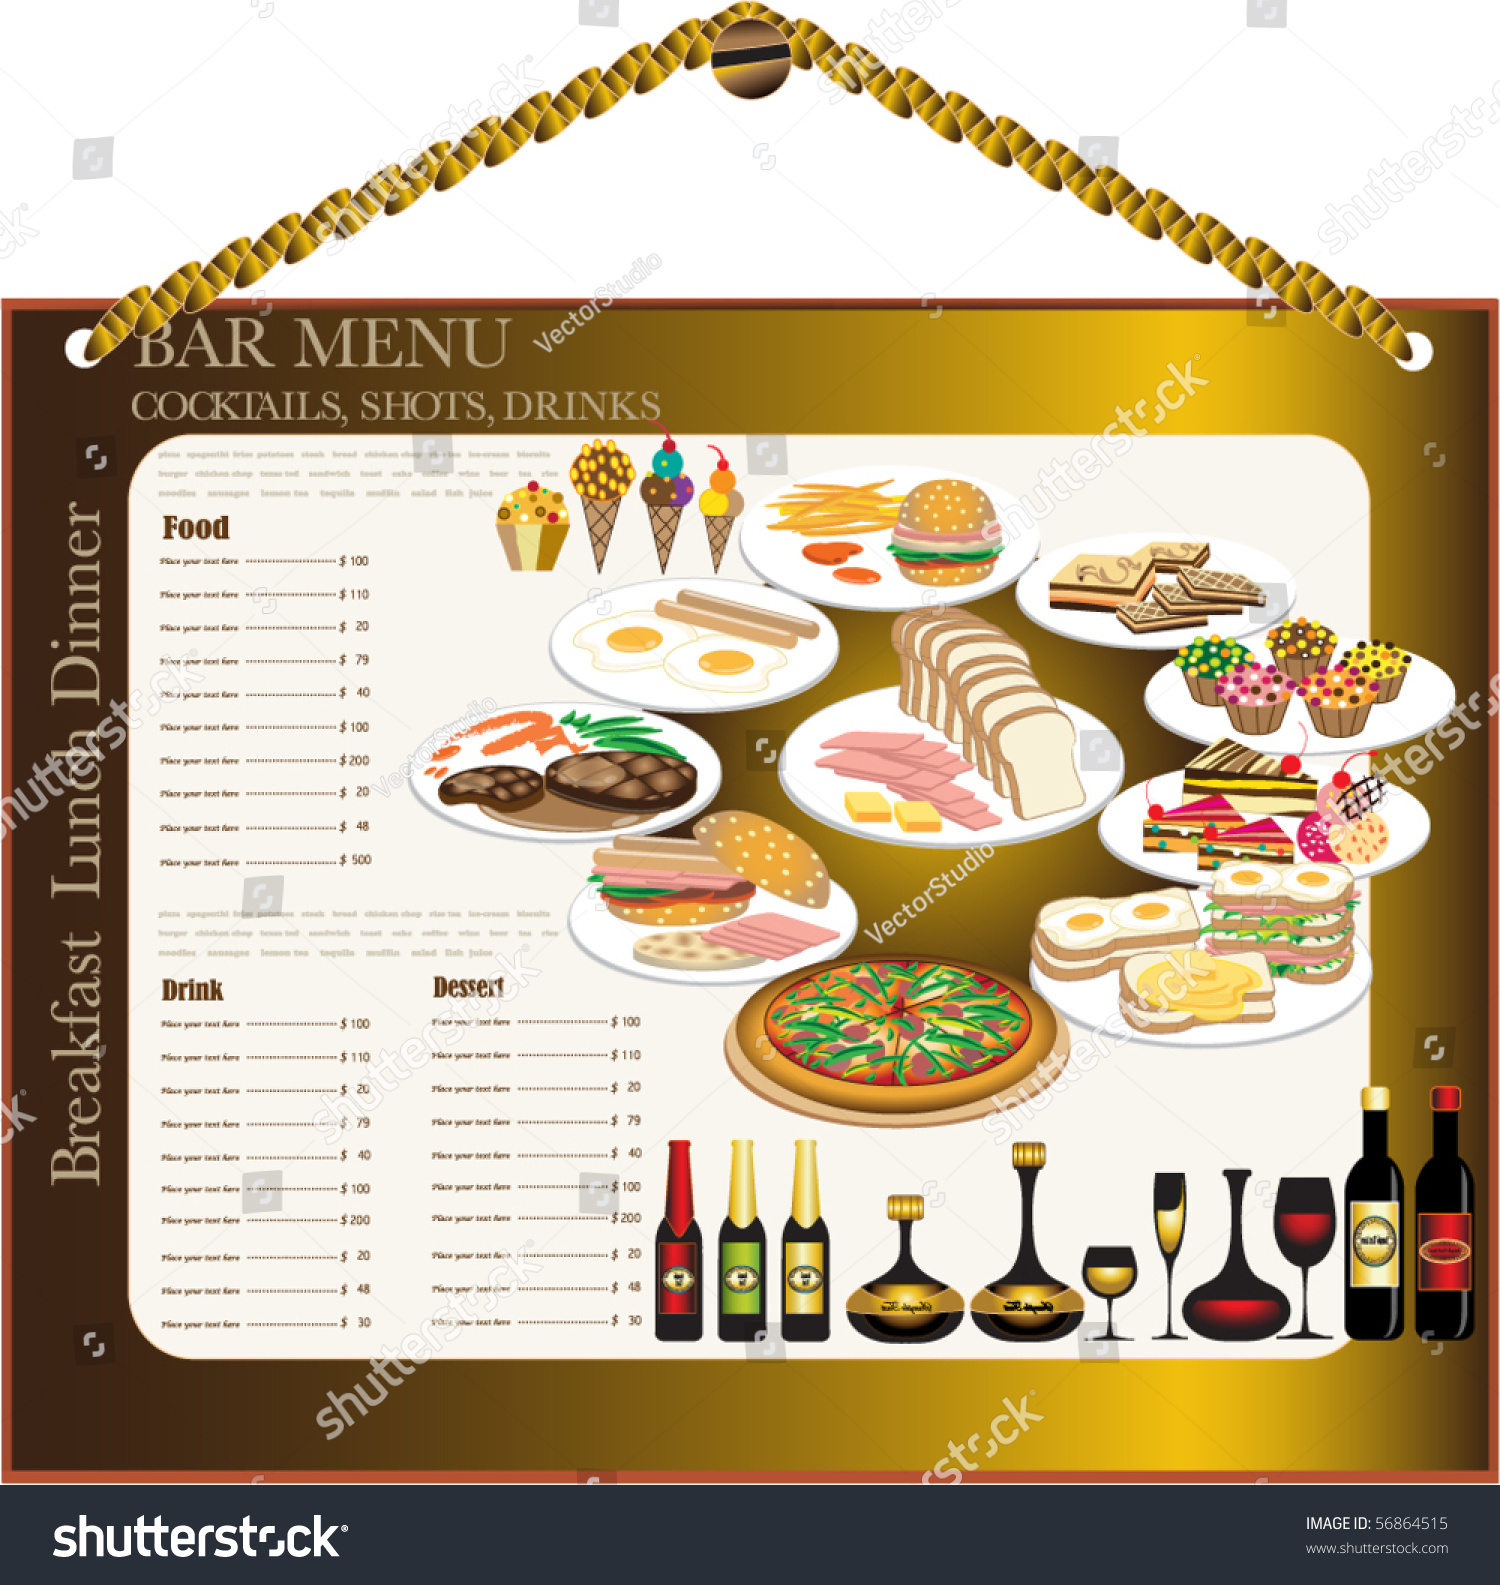 wine menu clipart - photo #23